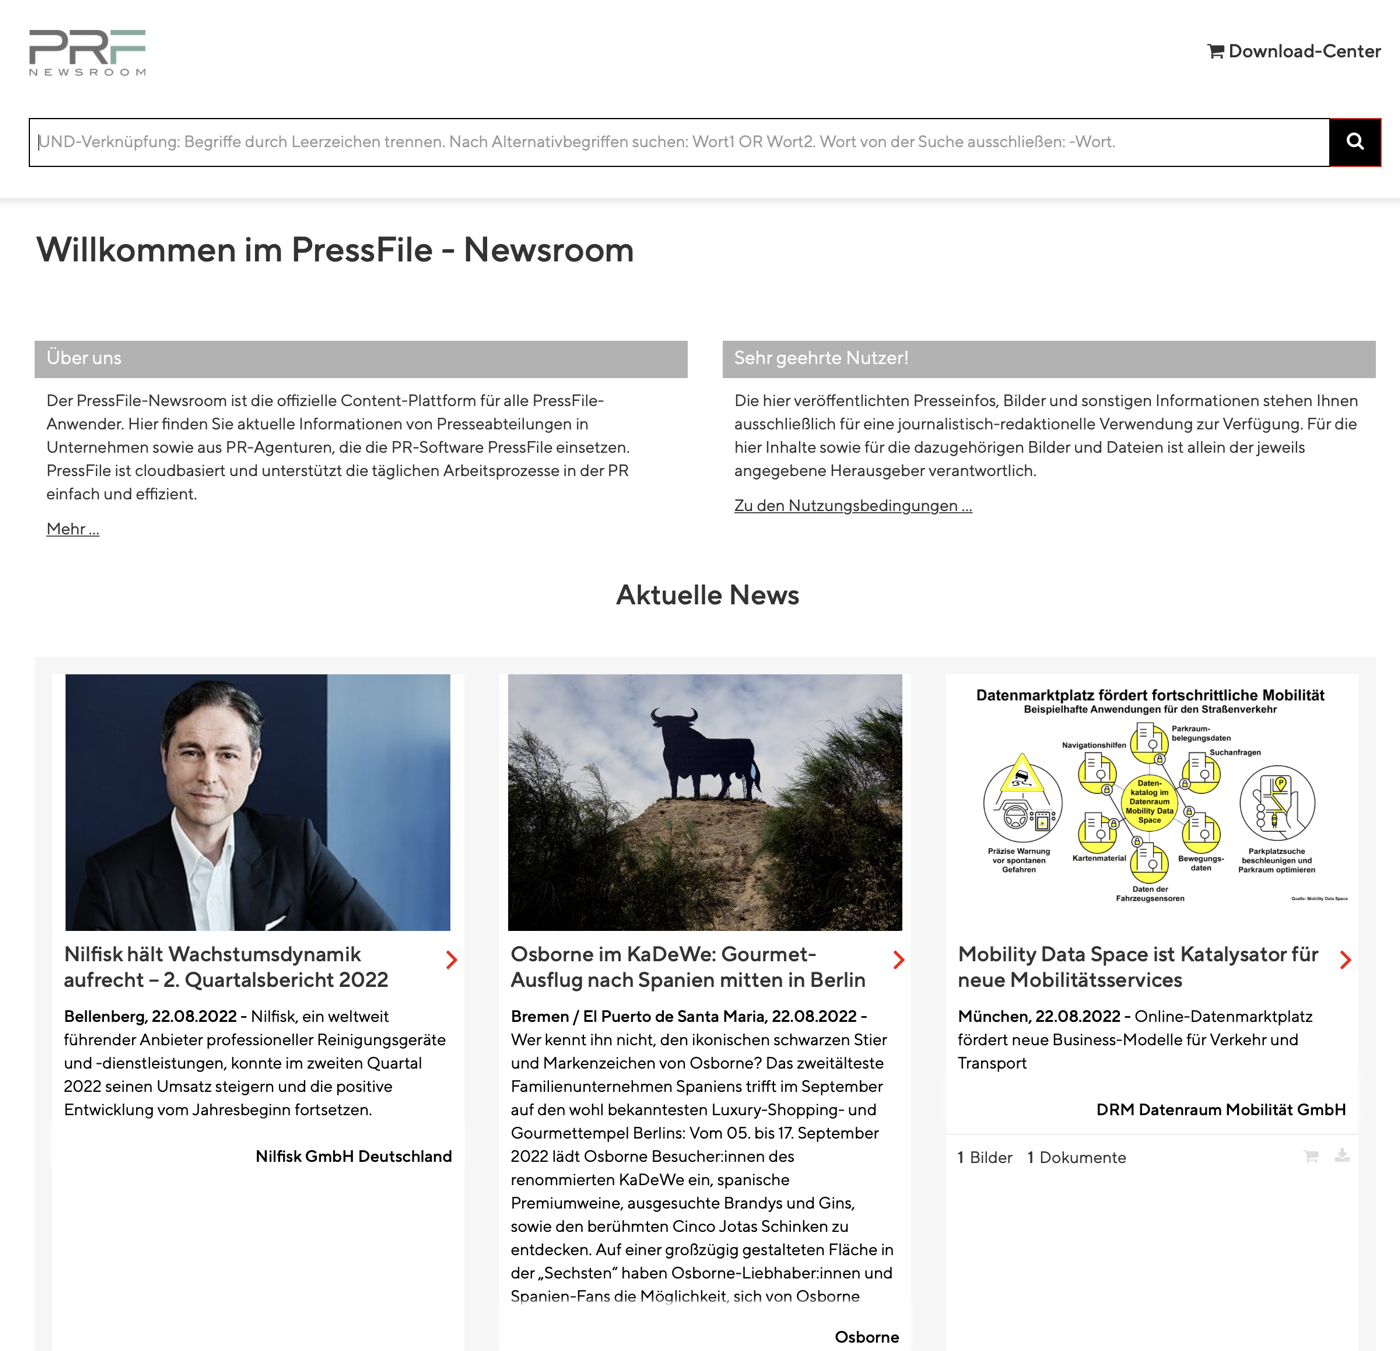 Der PressFile Newsroom: Einfach und schnell eingeführt